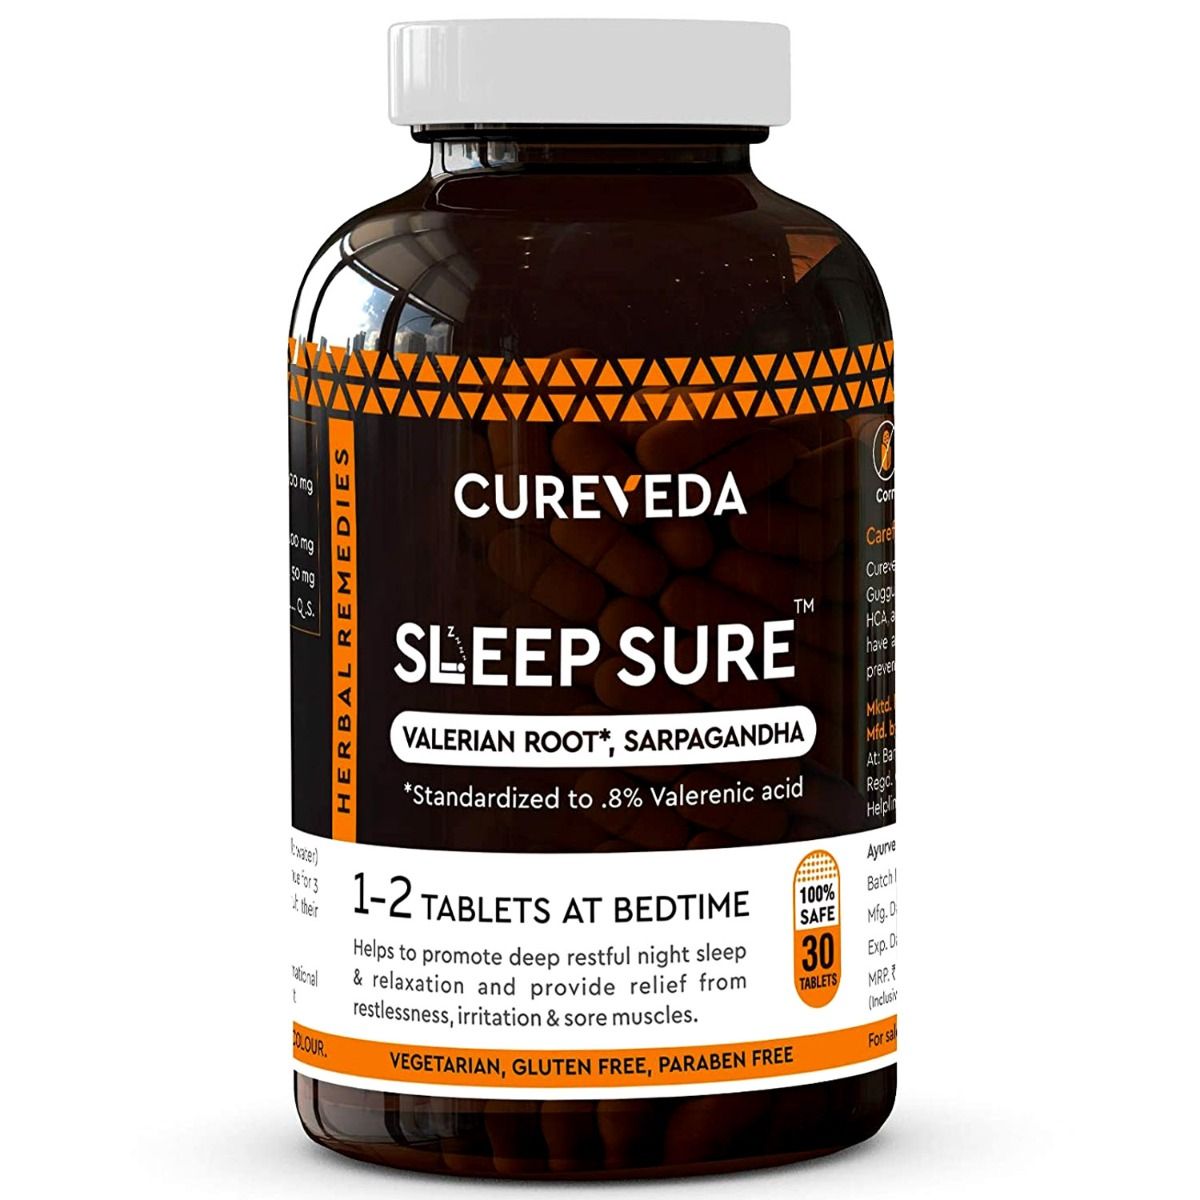 Buy Cureveda Sleep Sure, 30 Tablets Online